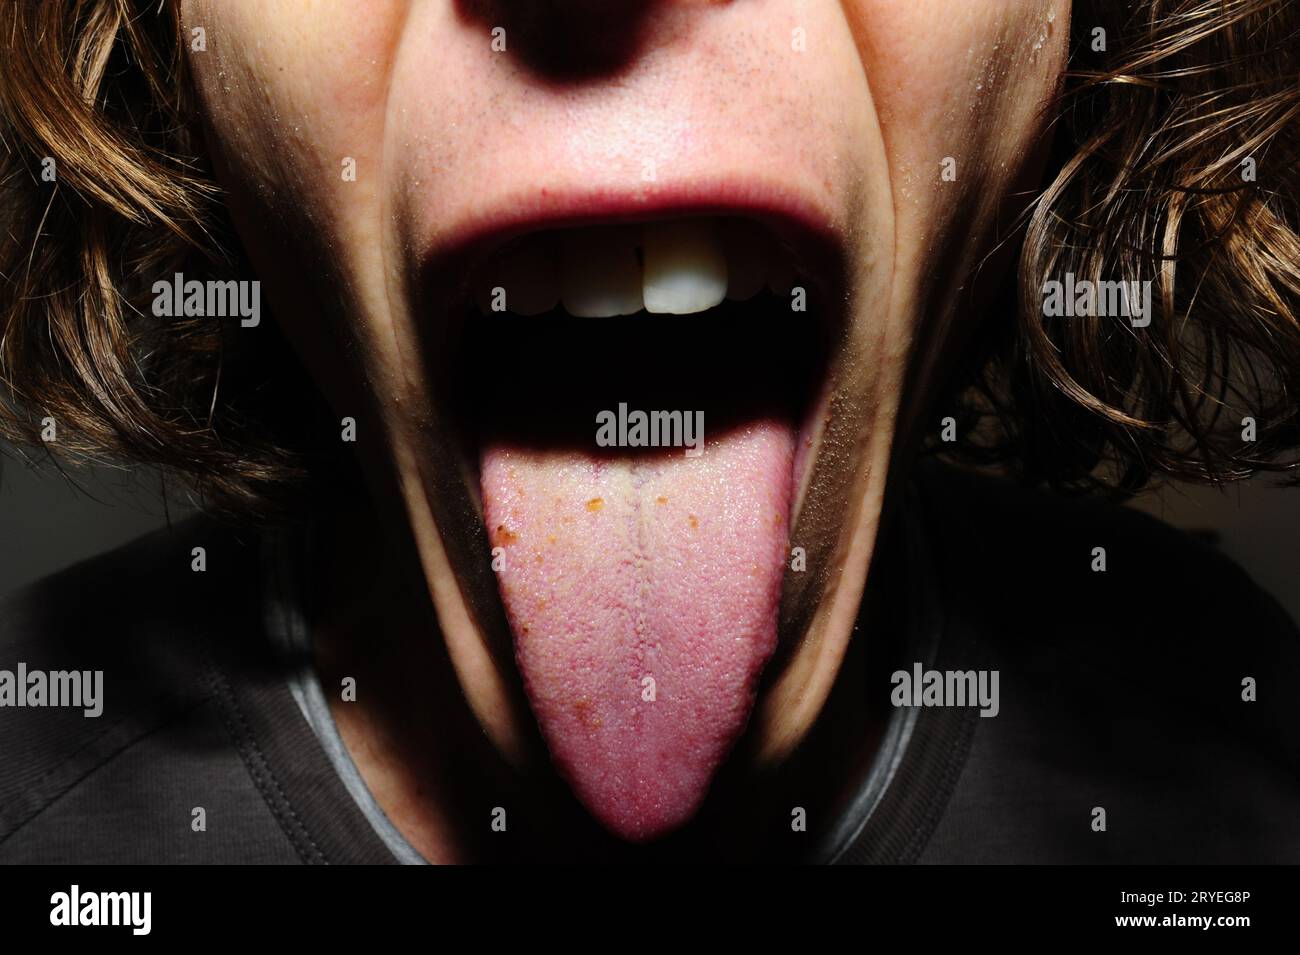 Ein Typ mit offenem Mund, der seine Zunge zeigt Stockfoto